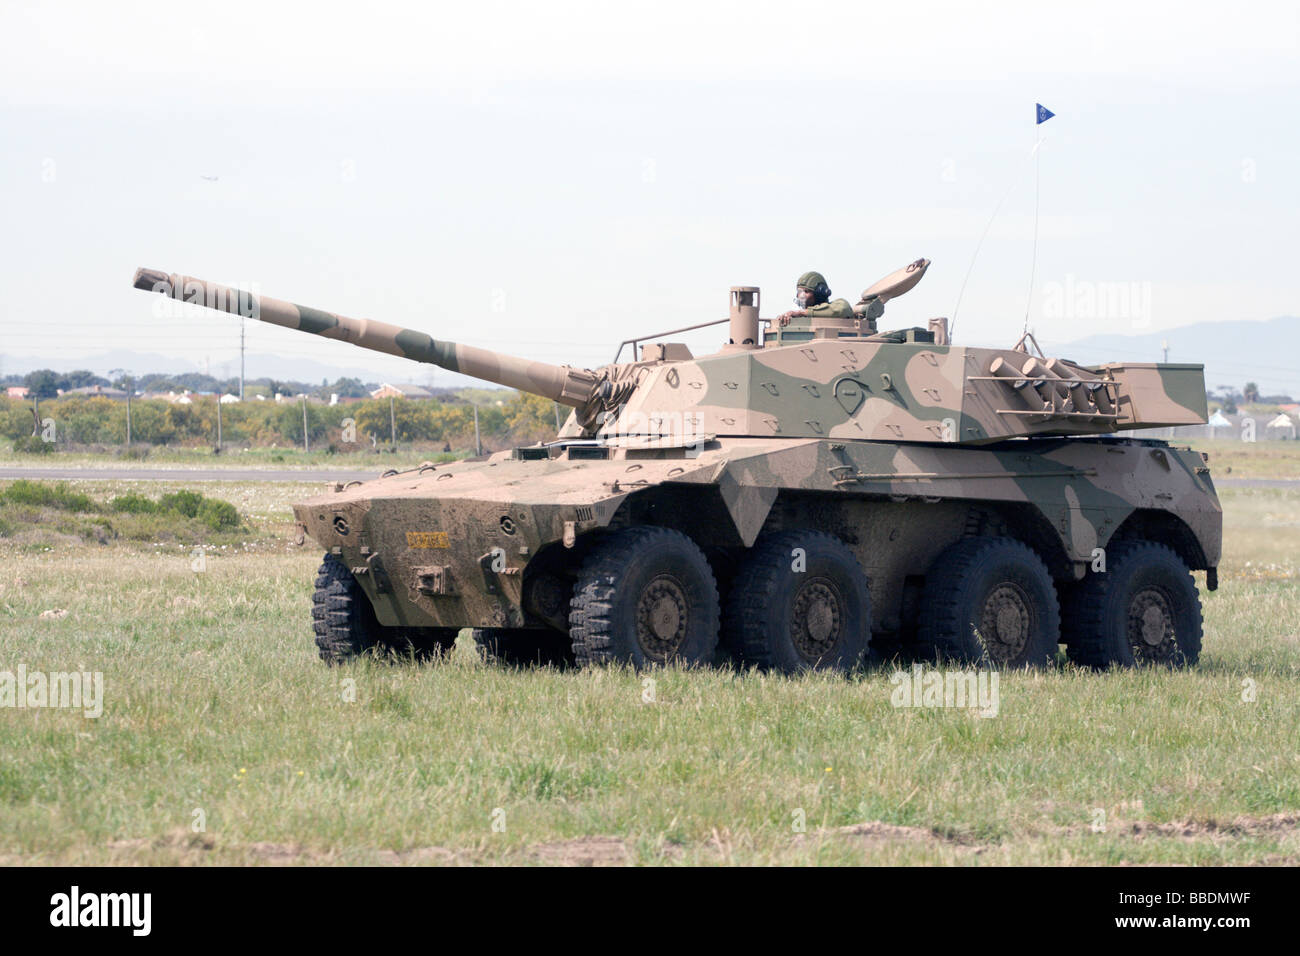 Un véhicule de combat blindé Rooikat sud-africains de la Force de défense nationale sud-africaine. Banque D'Images